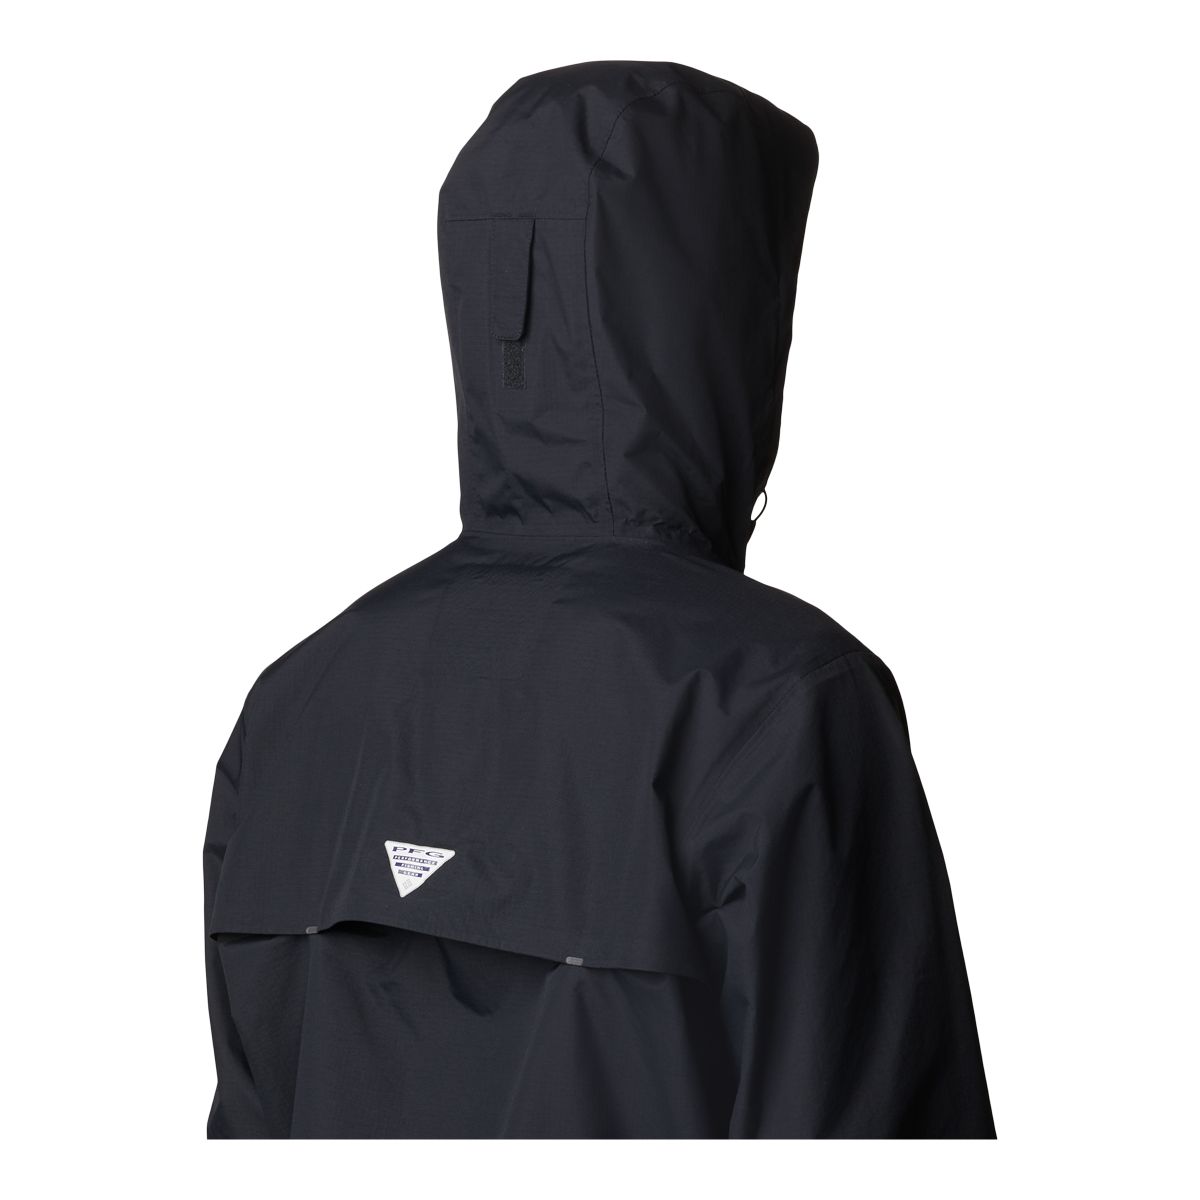 Columbia PFG Storm II Packable Jacket for Men